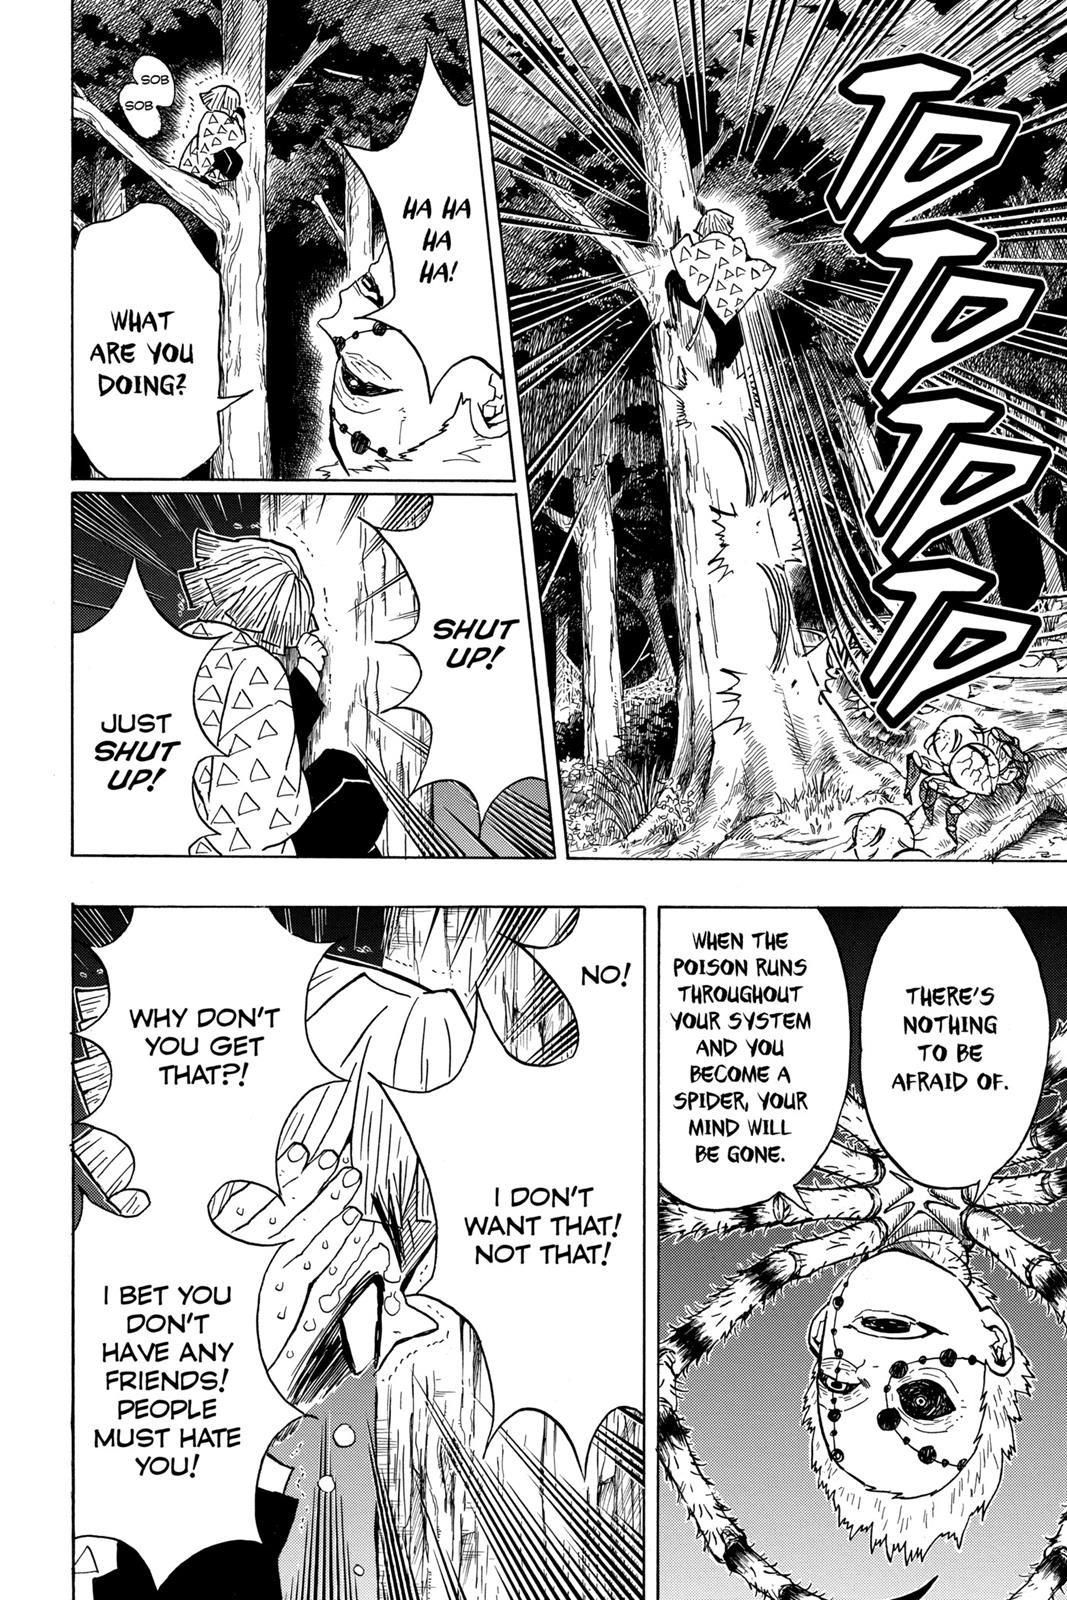 Demon Slayer Manga Manga Chapter - 33 - image 4